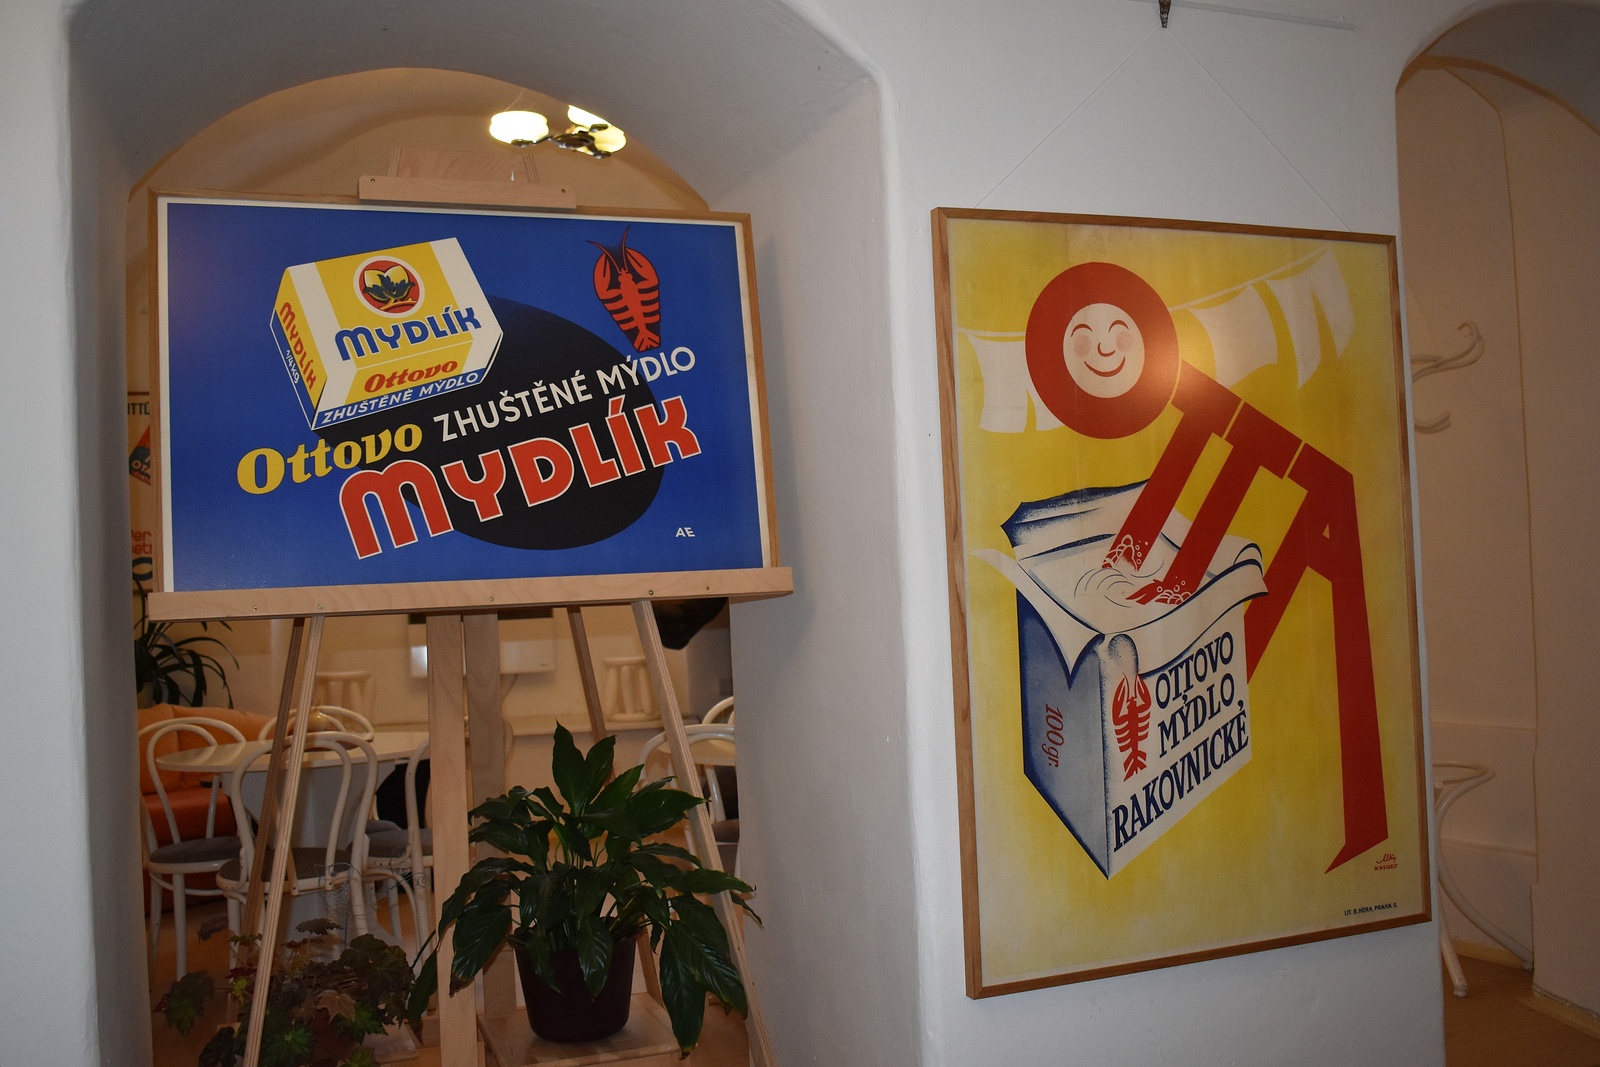 Foto: Výstava v Samson Cafeé nabízí výběr reklamních obrazů a plakátů firmy  Otta - Rakovnický deník